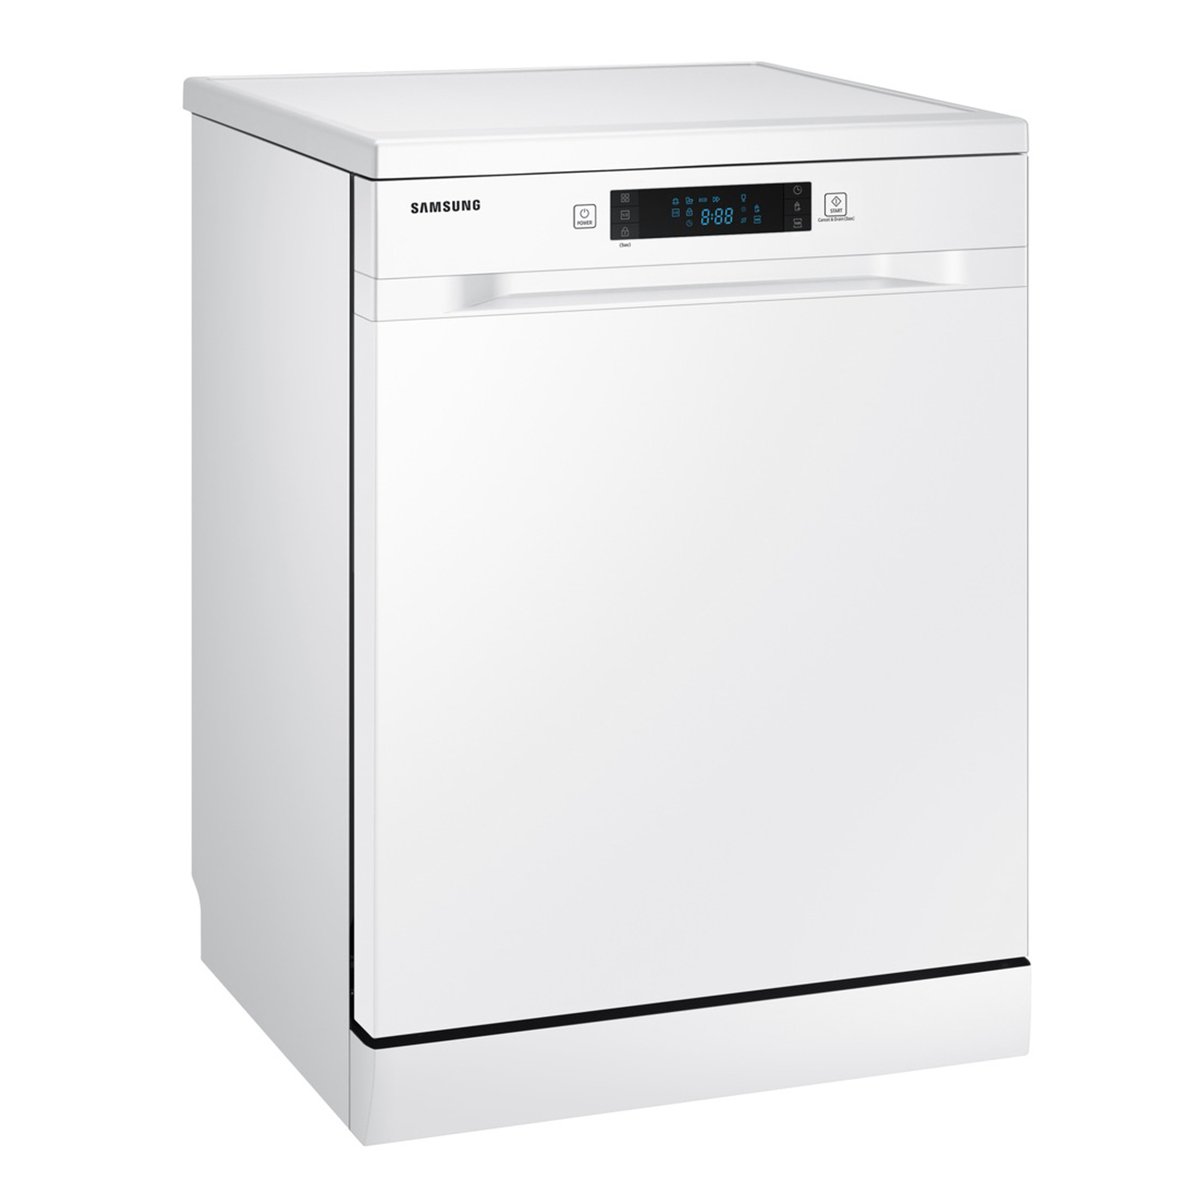 Samsung Dishwasher DW60M5050FW/SG 5Programs